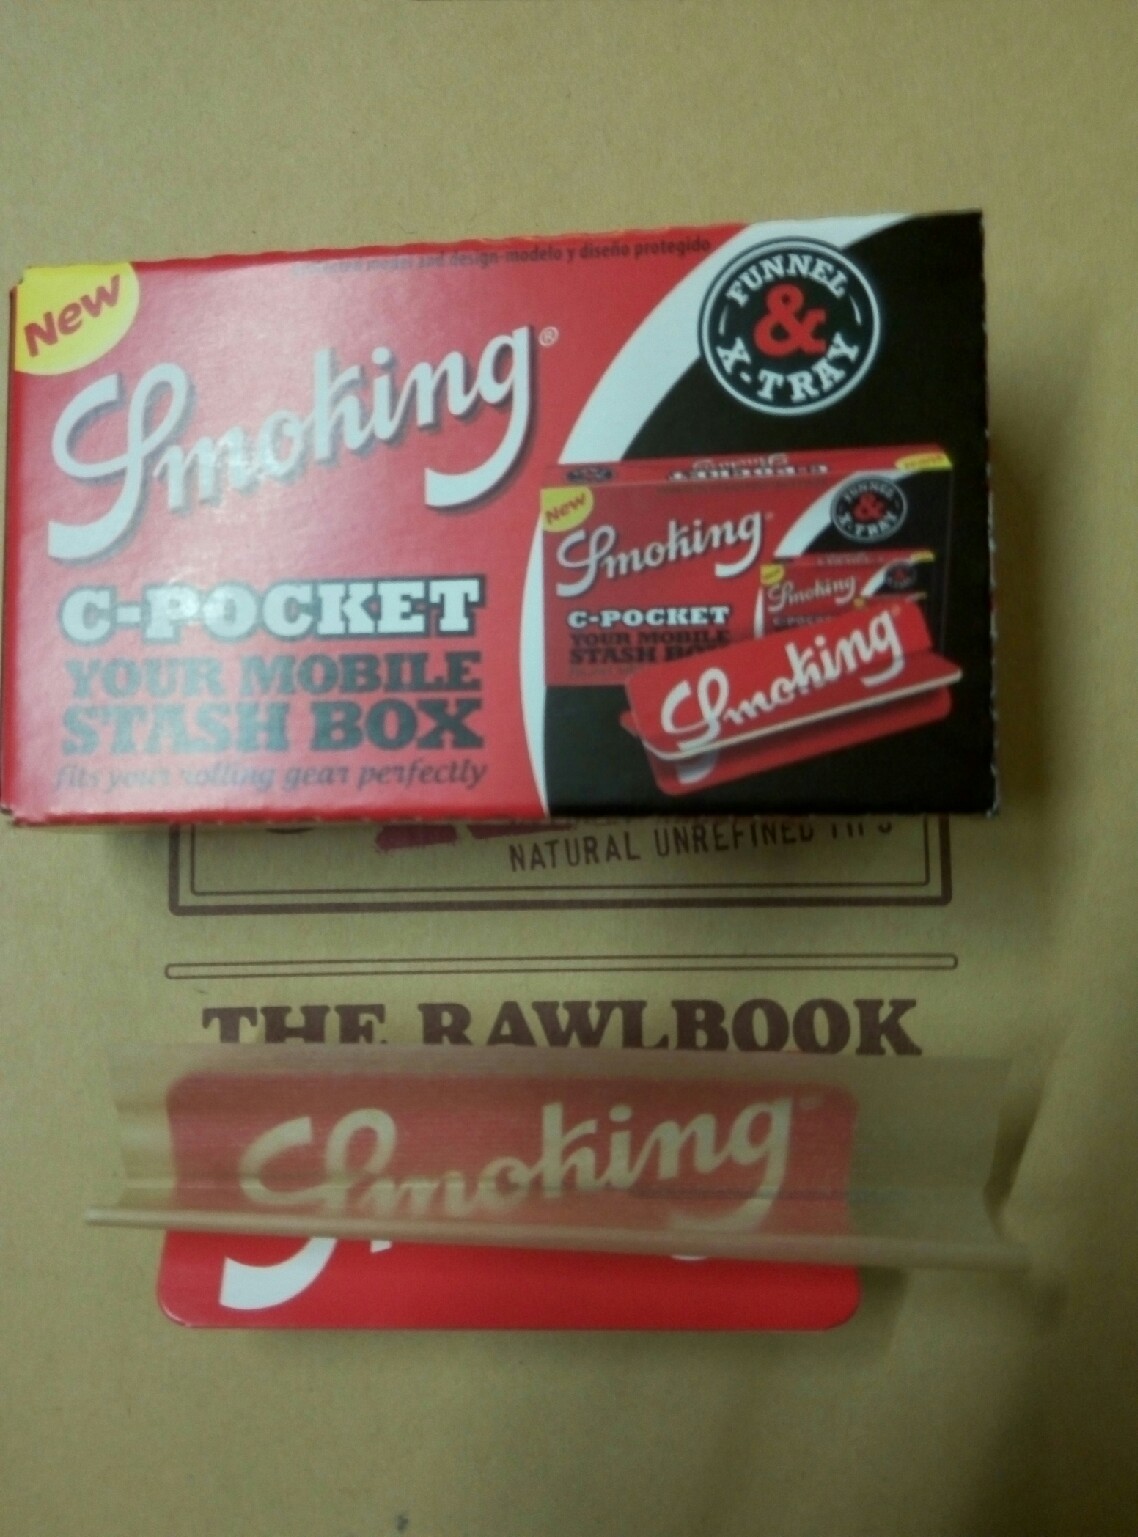 Caja de Bolsillo Smoking C-Pocket 1